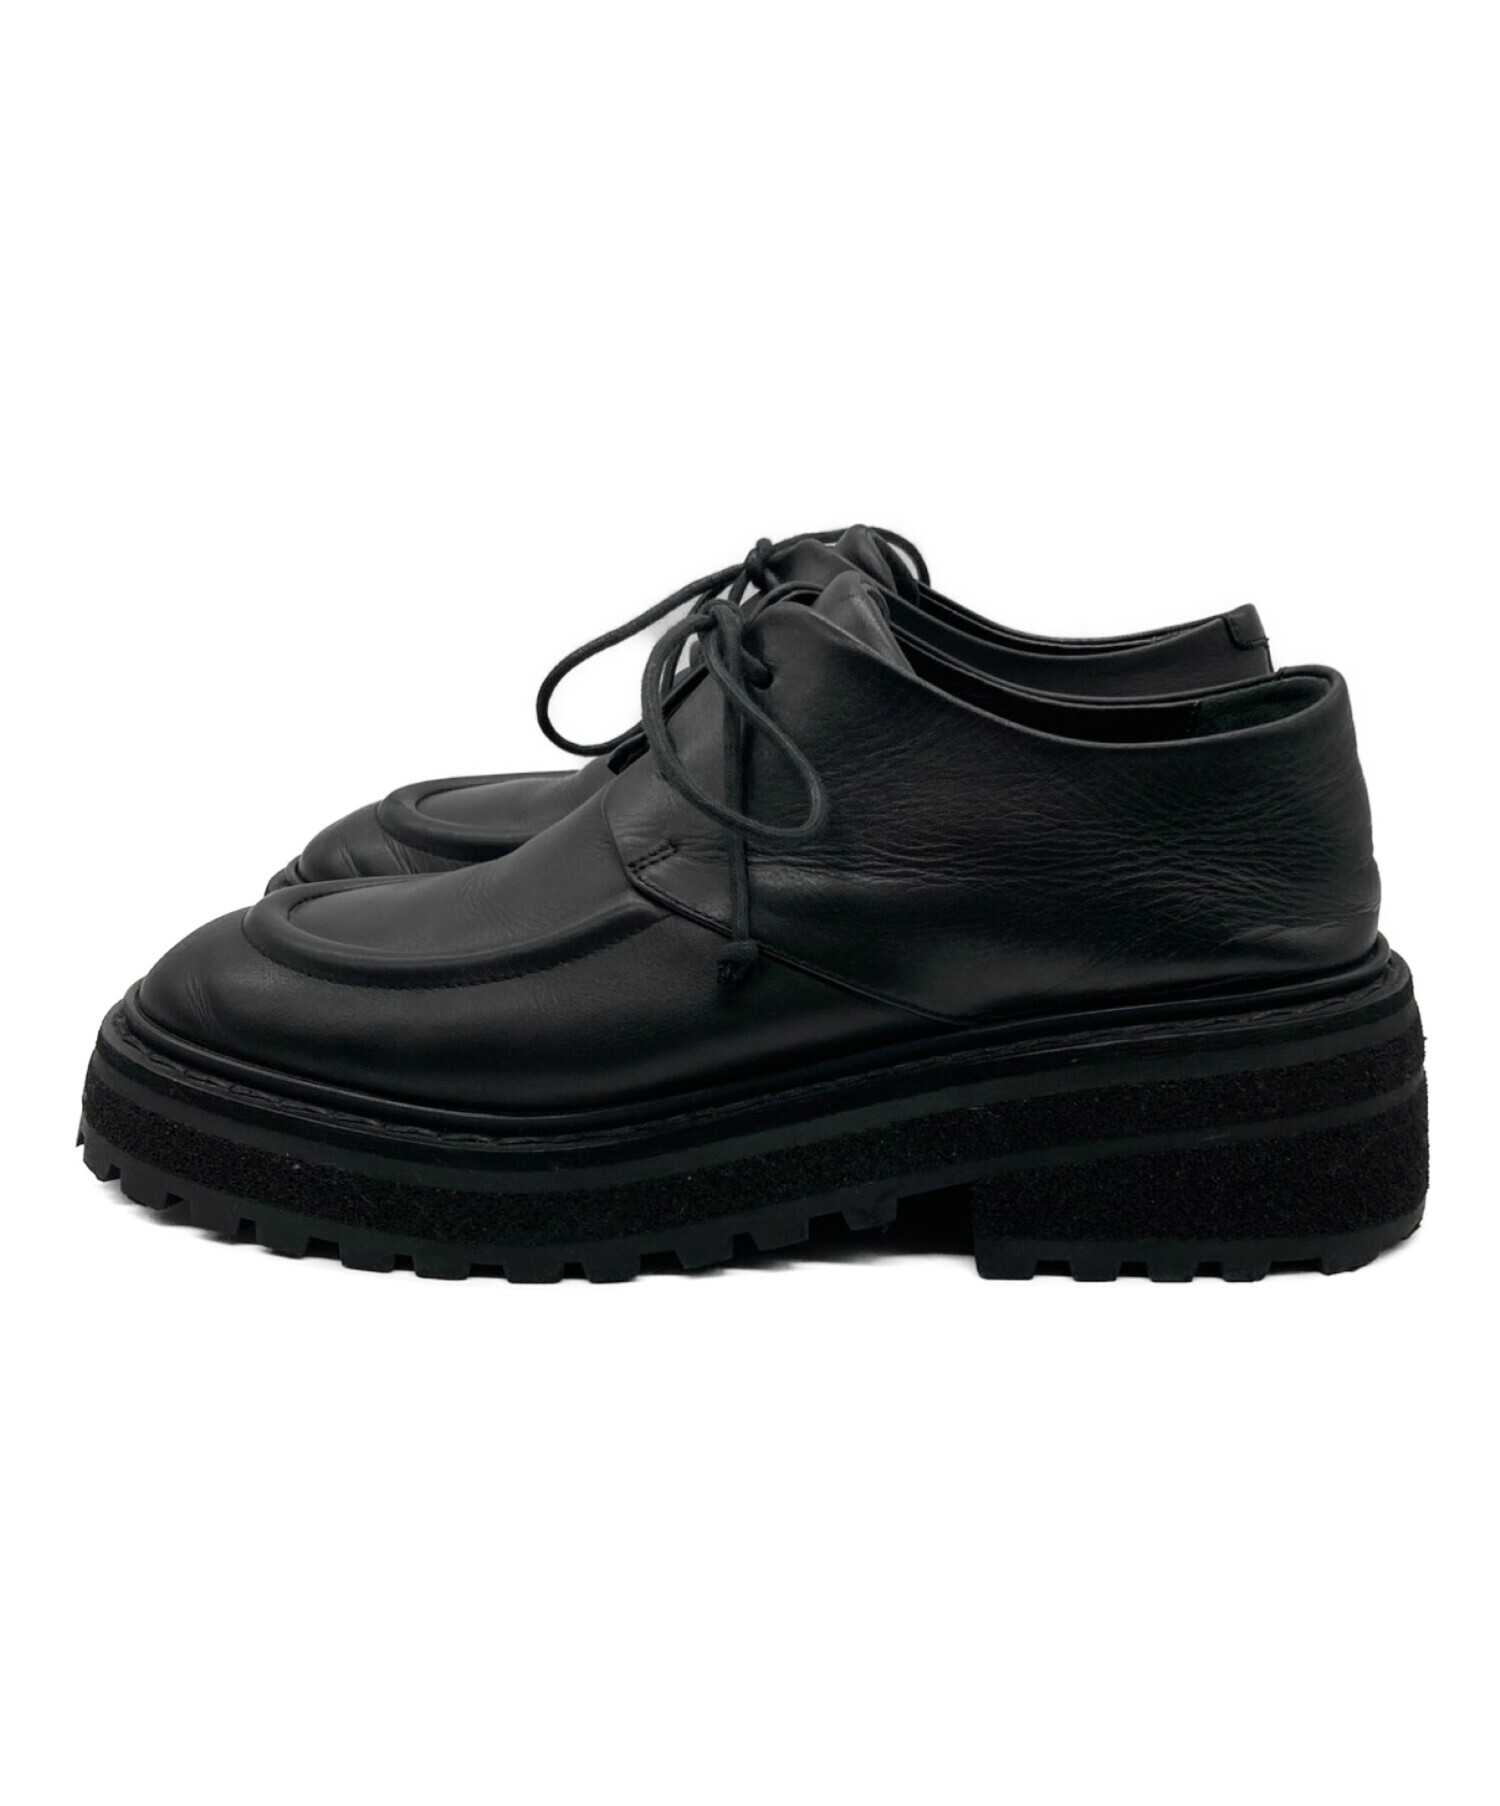 中古・古着通販】marsell (マルセル) Black Lace-Up Shoes ブラック